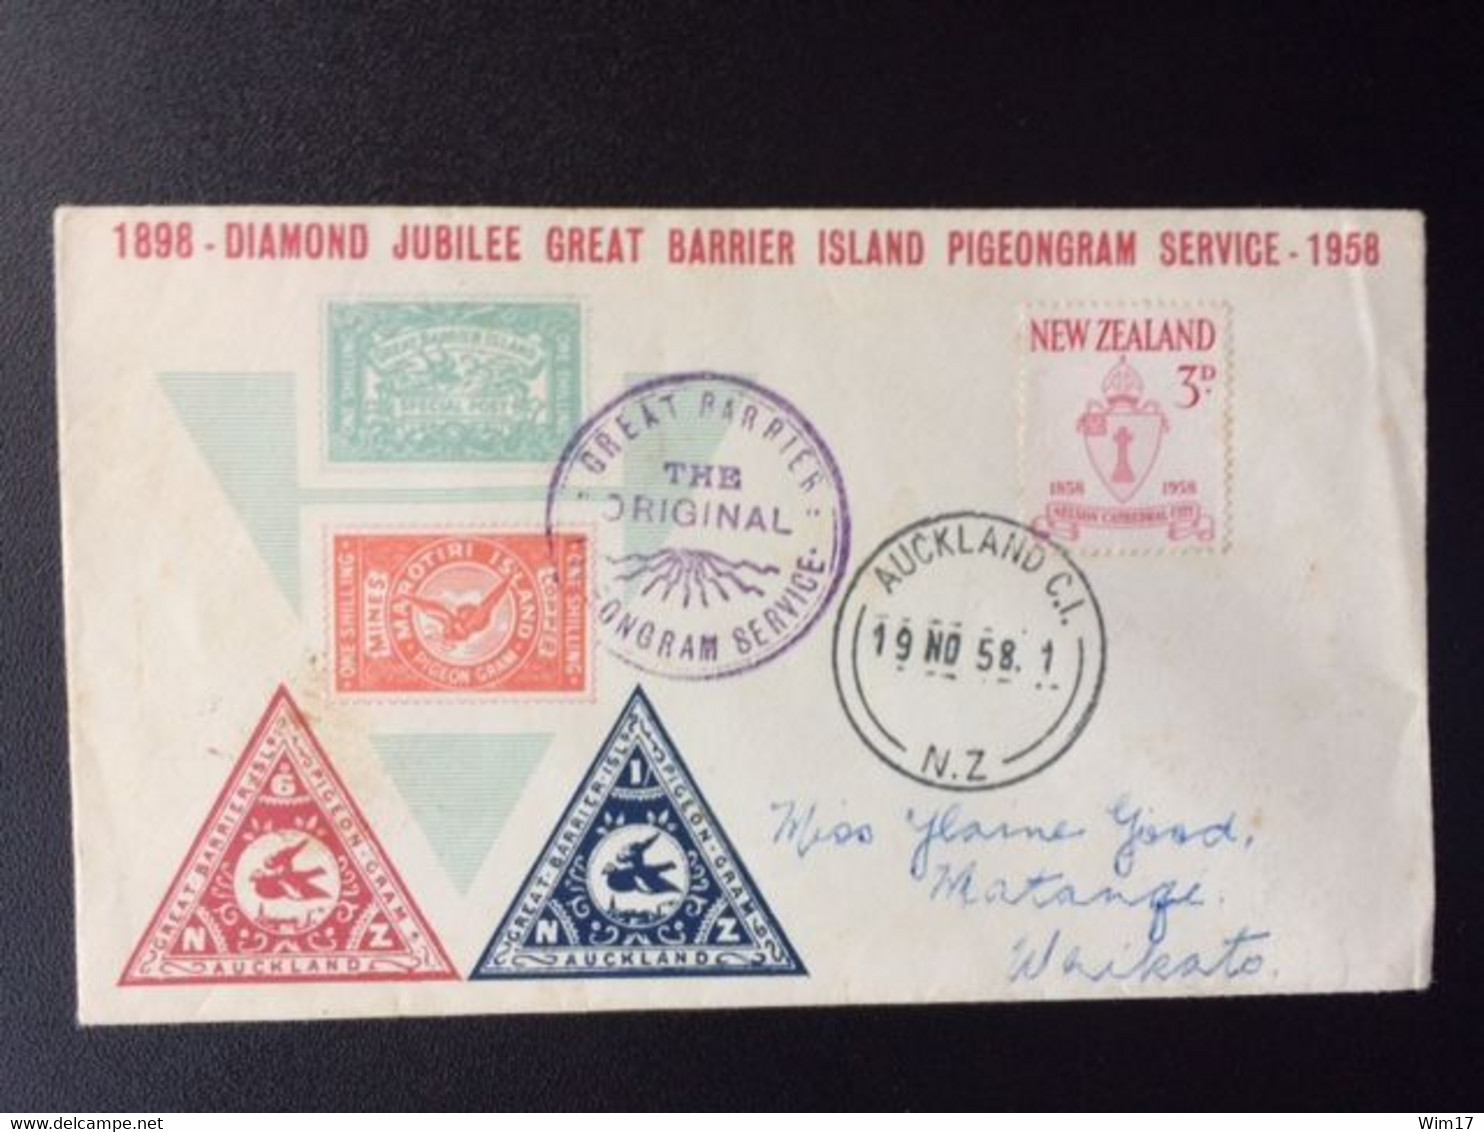 NEW ZEALAND 1958 GREAT BARRIER ISLAND PIGEONGRAM SERVICE 19-11-1958 TO WAIKATO NIEUW ZEELAND - Briefe U. Dokumente